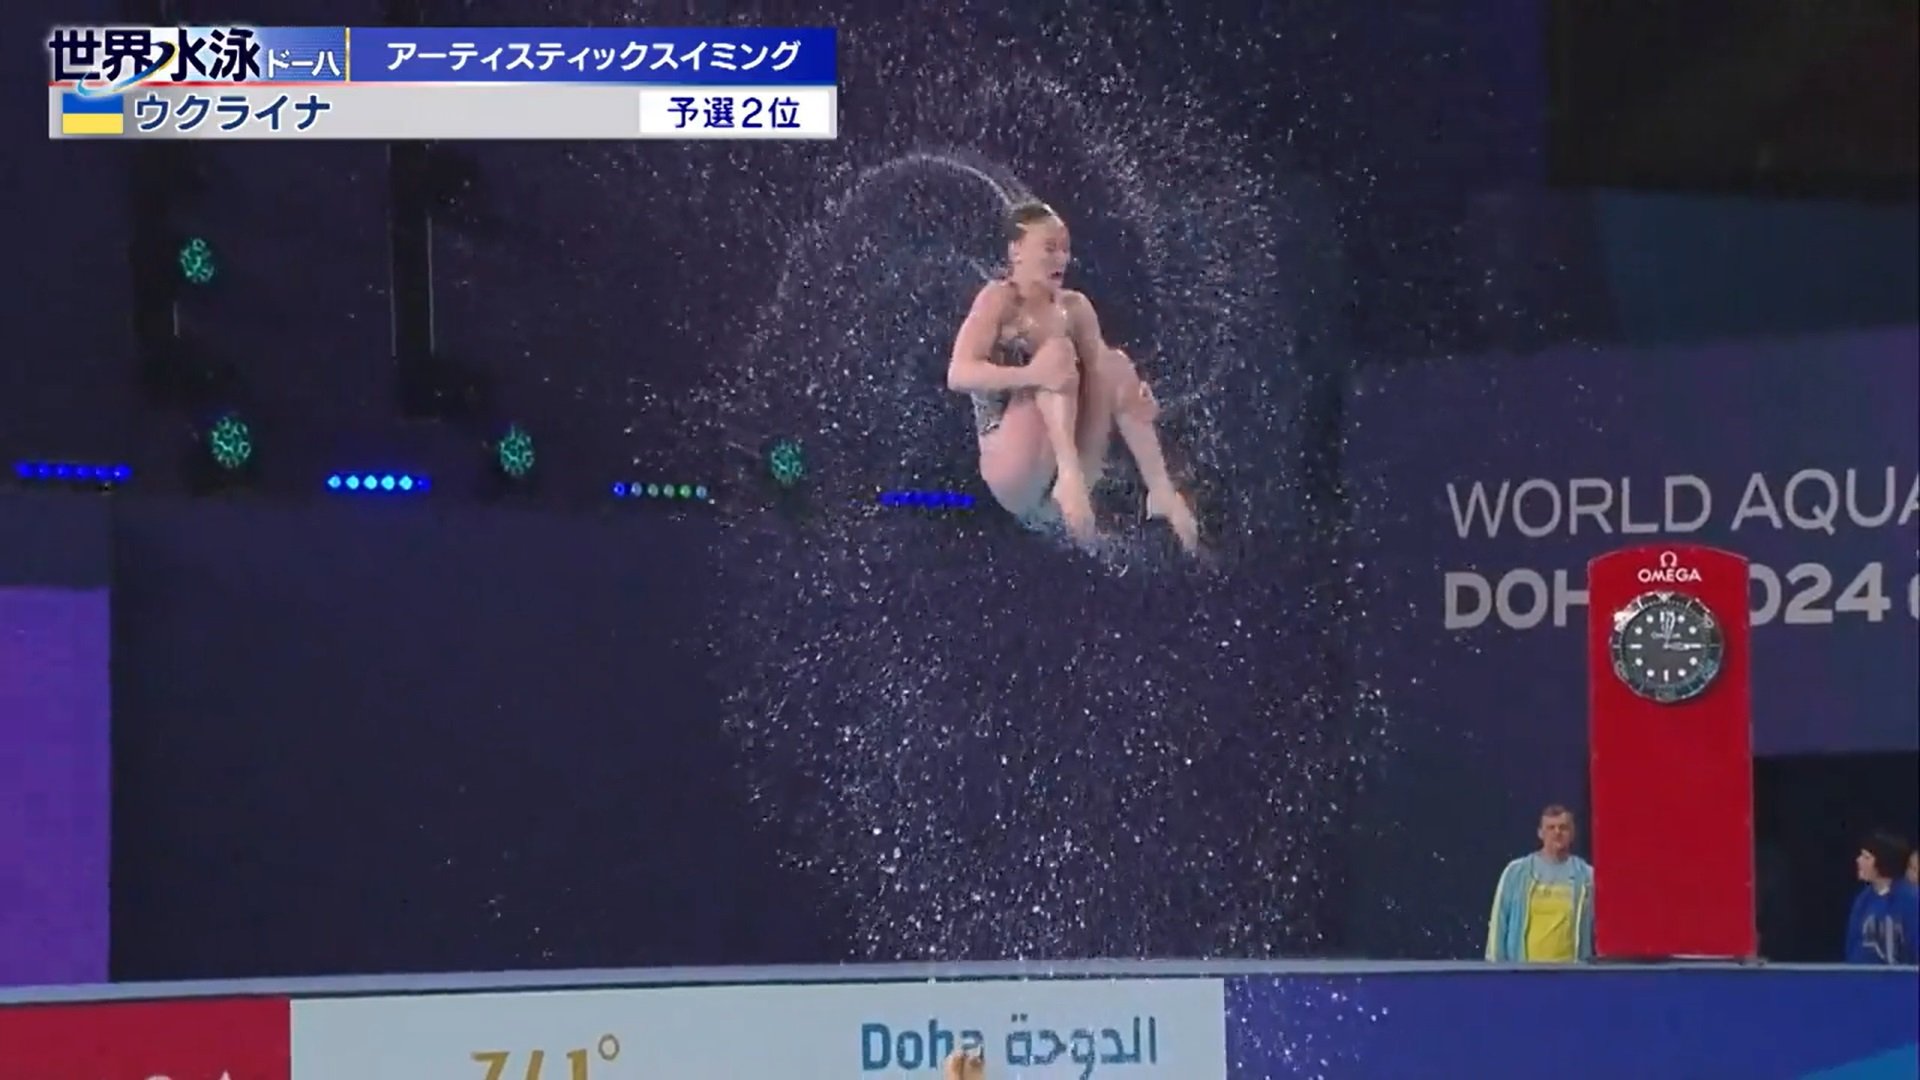 本当に水中から飛んだのか！？世界水泳AS銀メダルのウクライナチーム リフト技の高さがとてつもない 解説者「このエアボーン ...